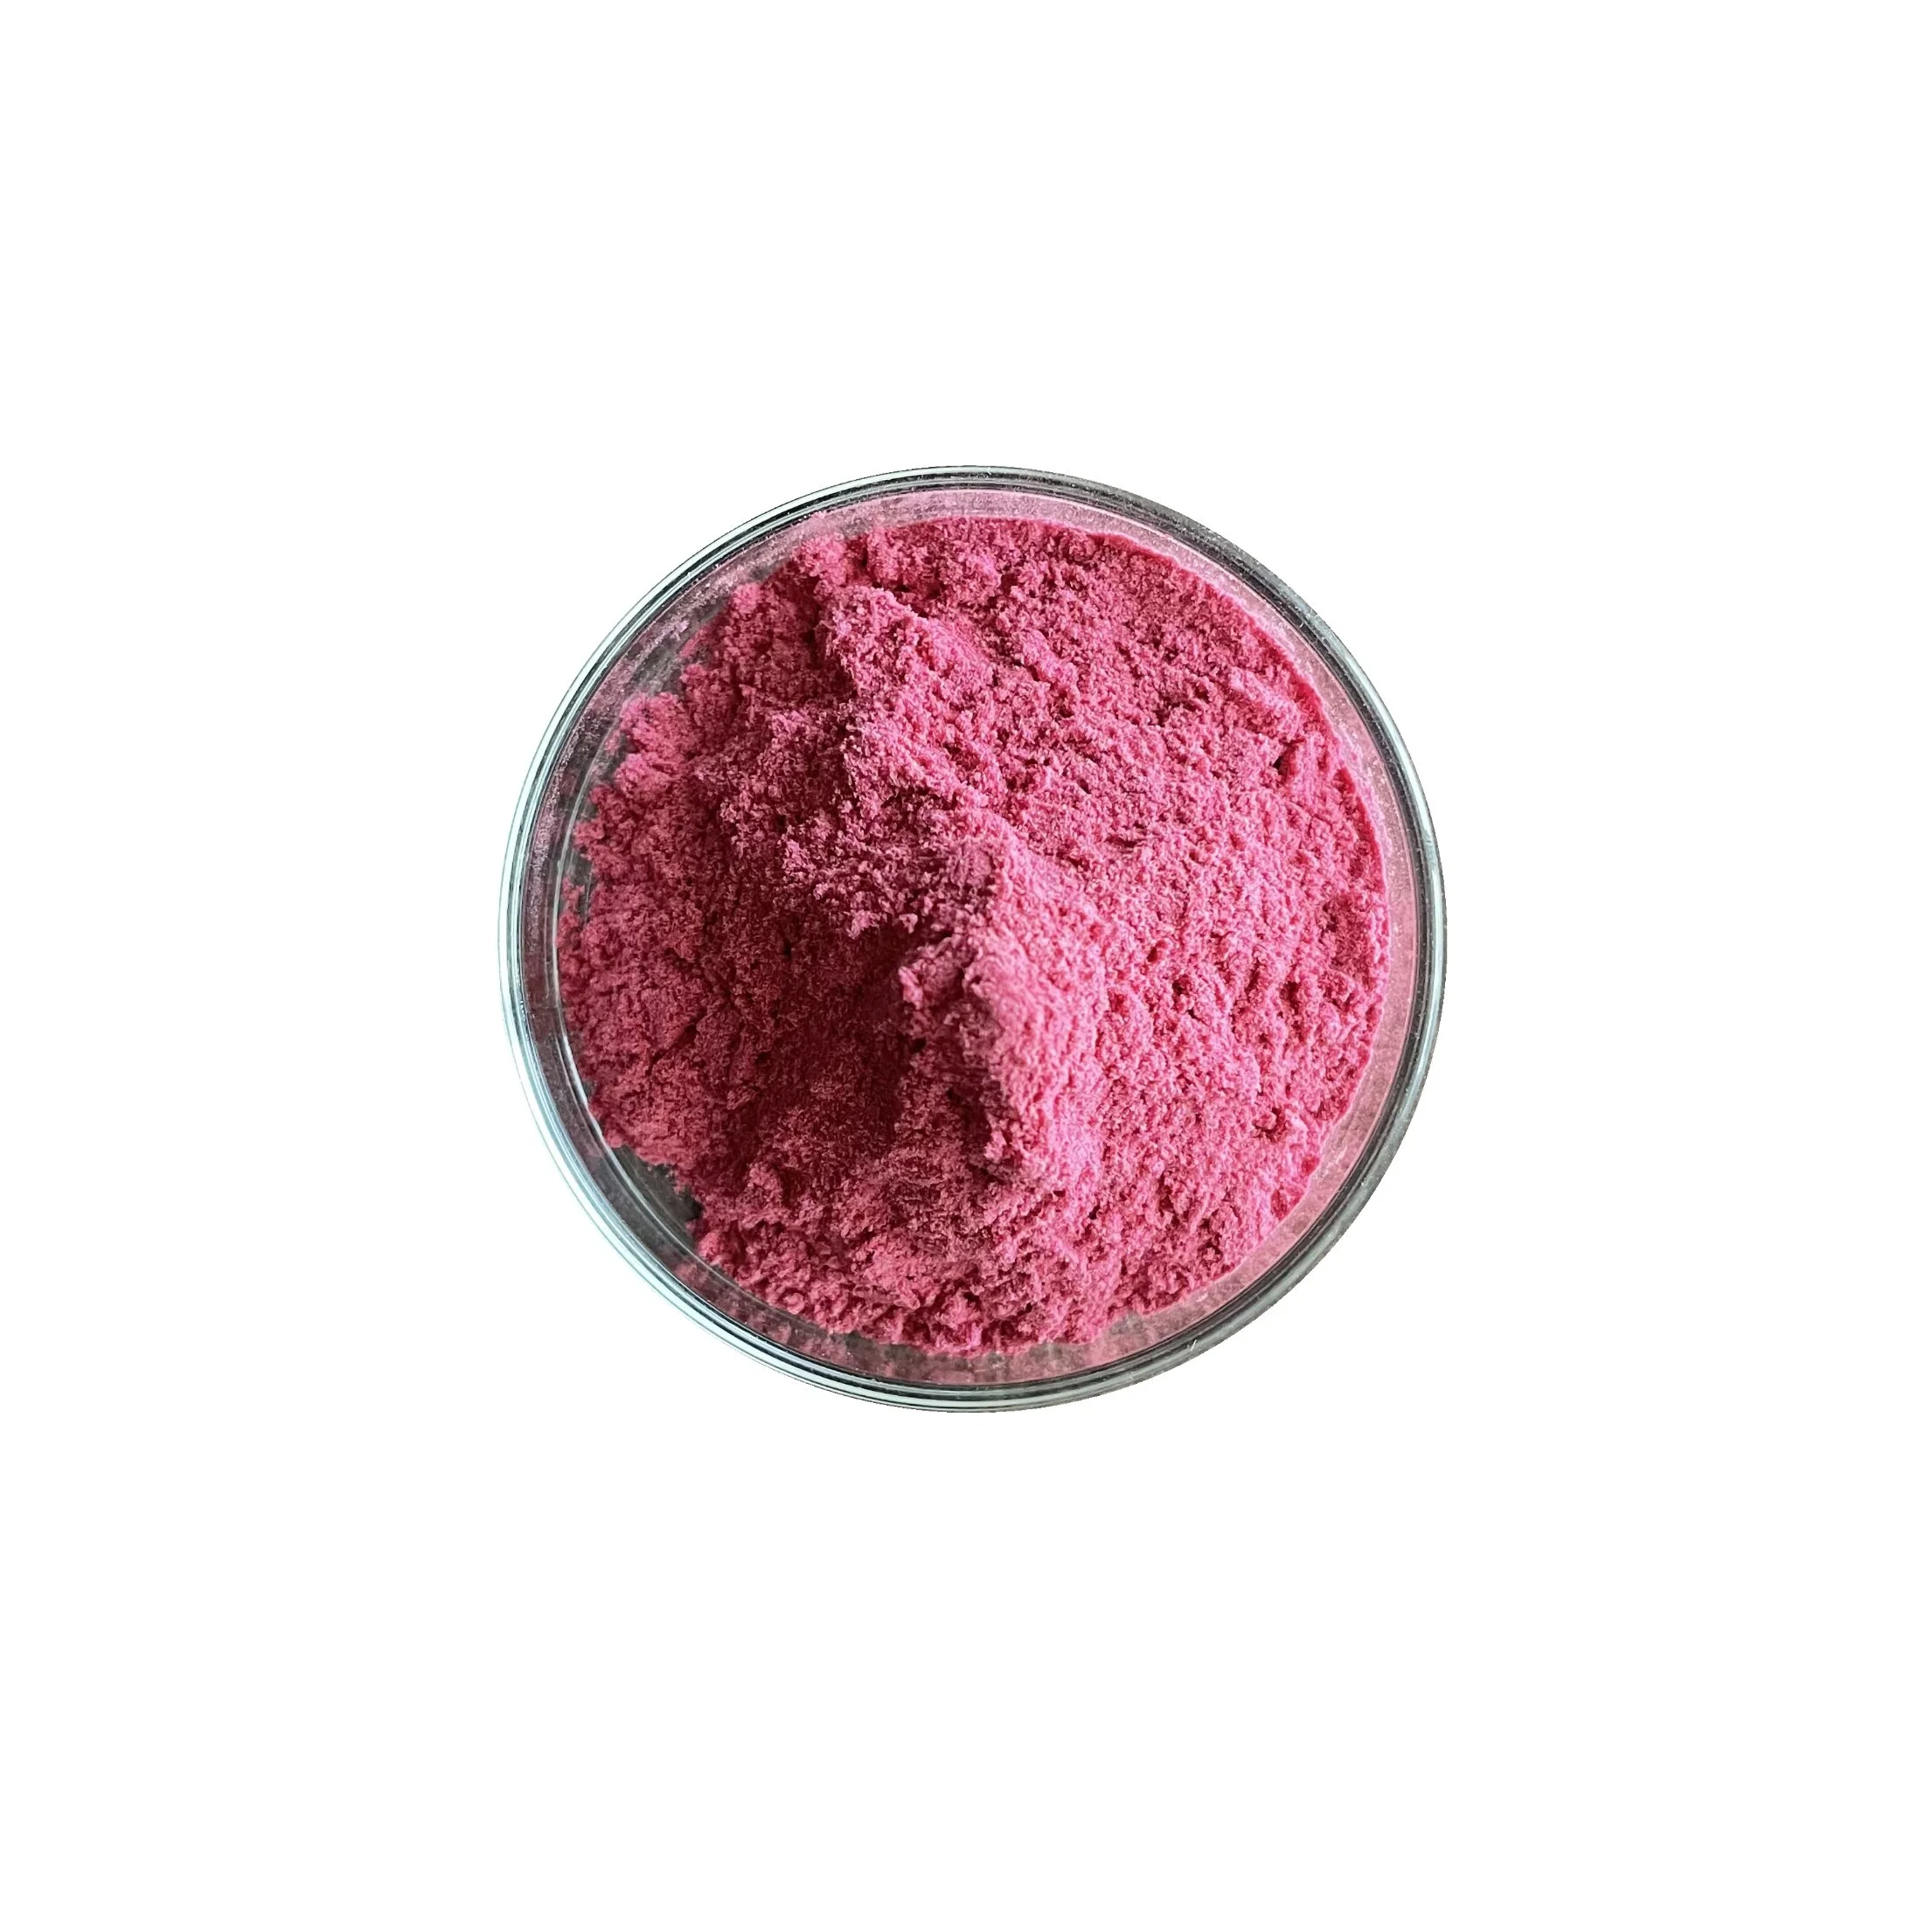 Pink Pitaya Powder Freeze Dried Natural Red Dragon Fruit Powder